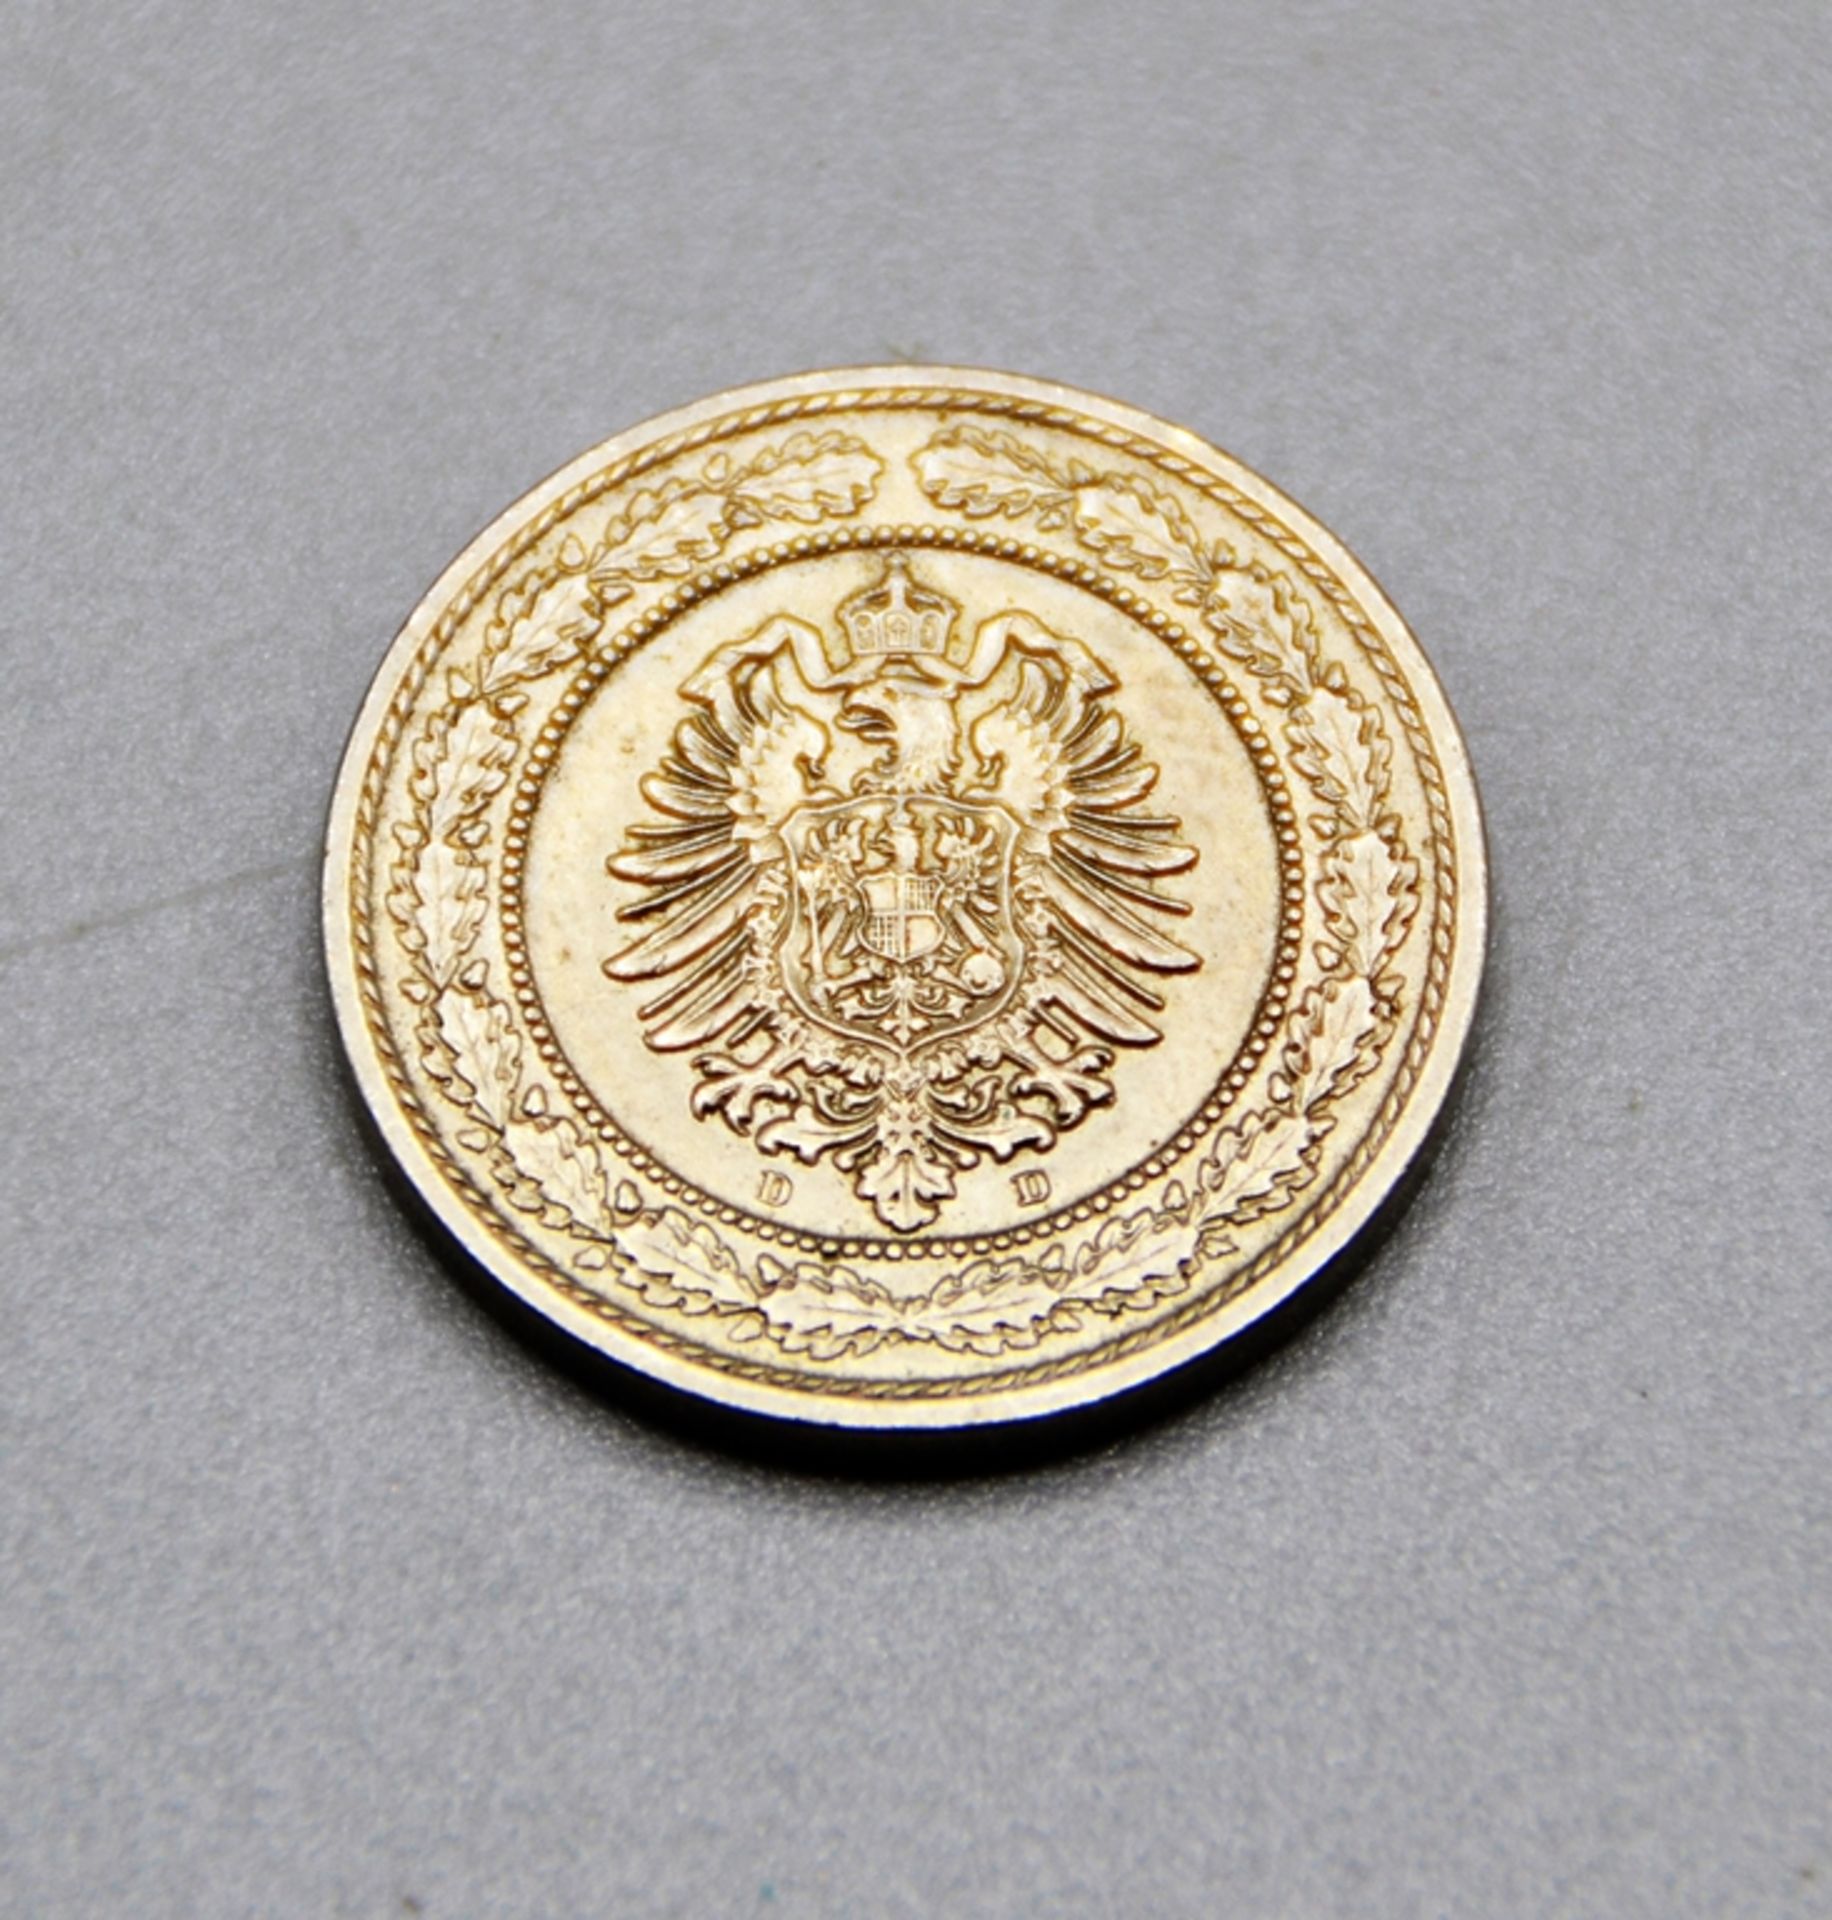 20 Pfennig 1888 D Deutsches Kaiserreich selten, sehr gute Erhaltung - Image 2 of 2